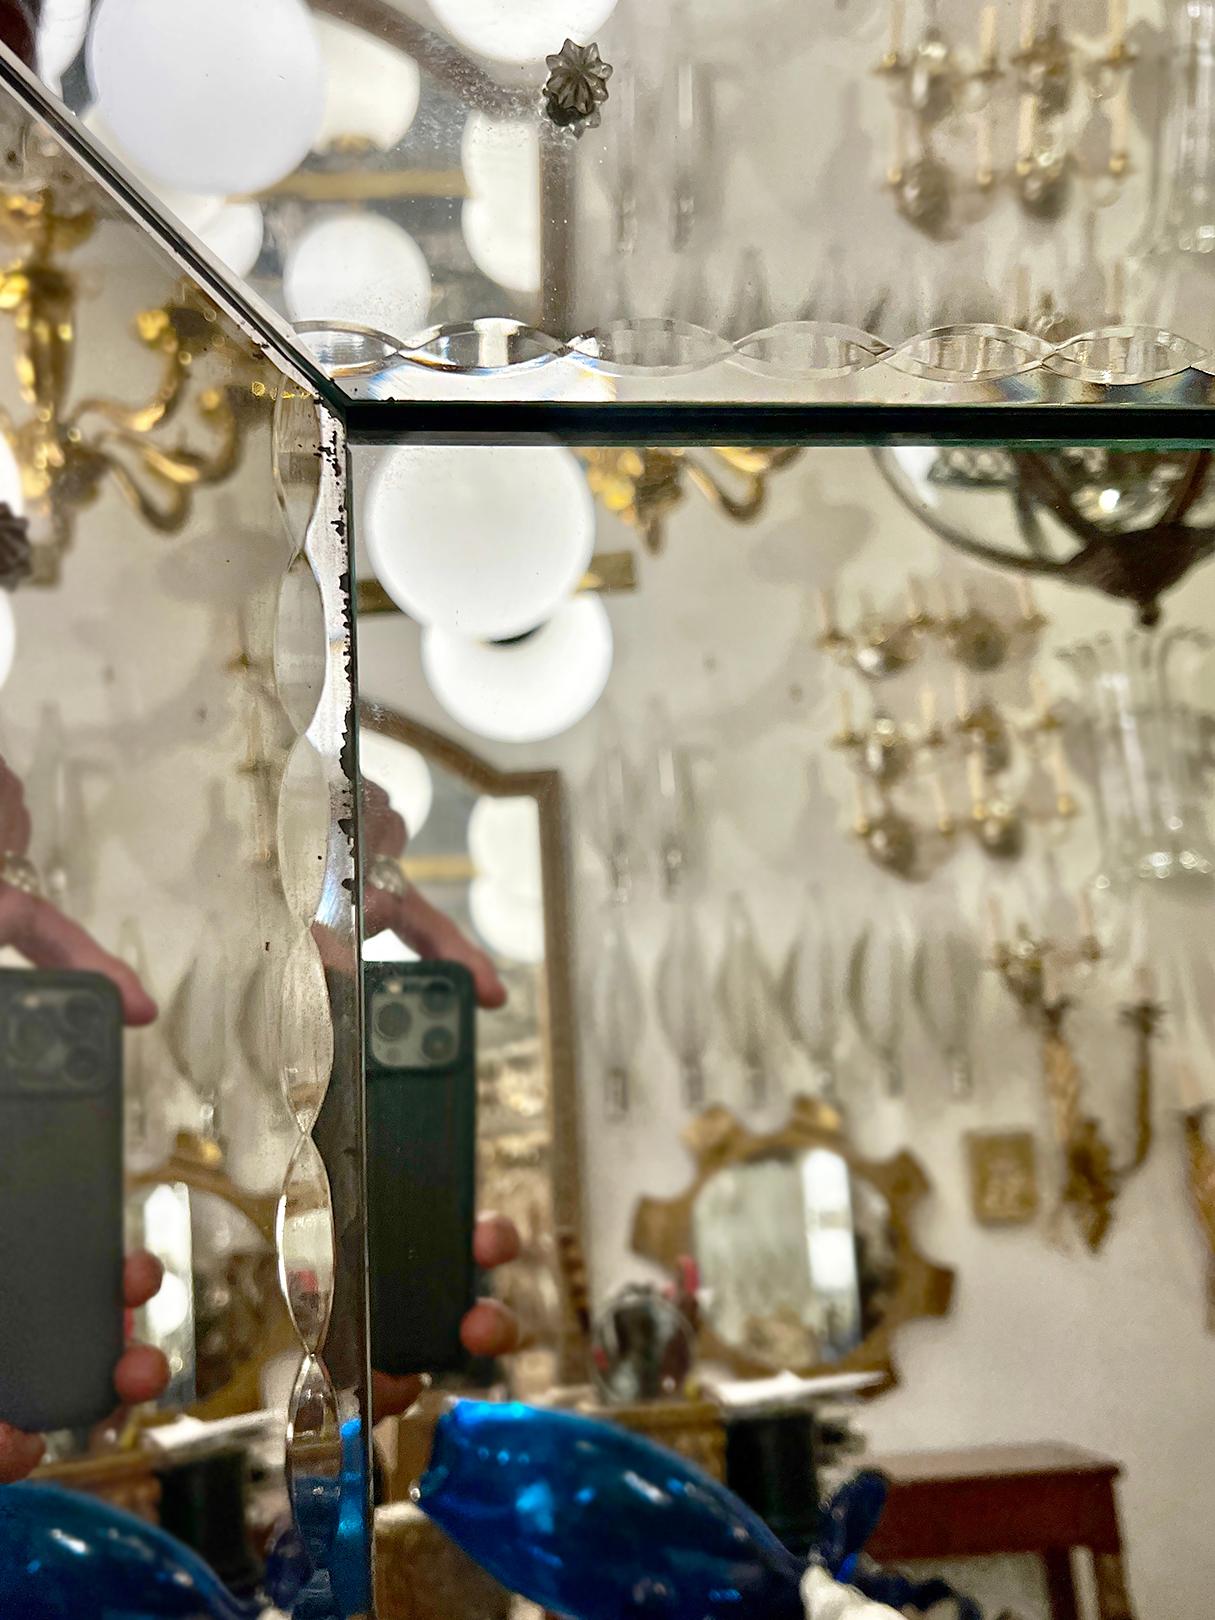 Un miroir italien gravé des années 1960 avec des bords biseautés.

Mesures :
Hauteur : 58